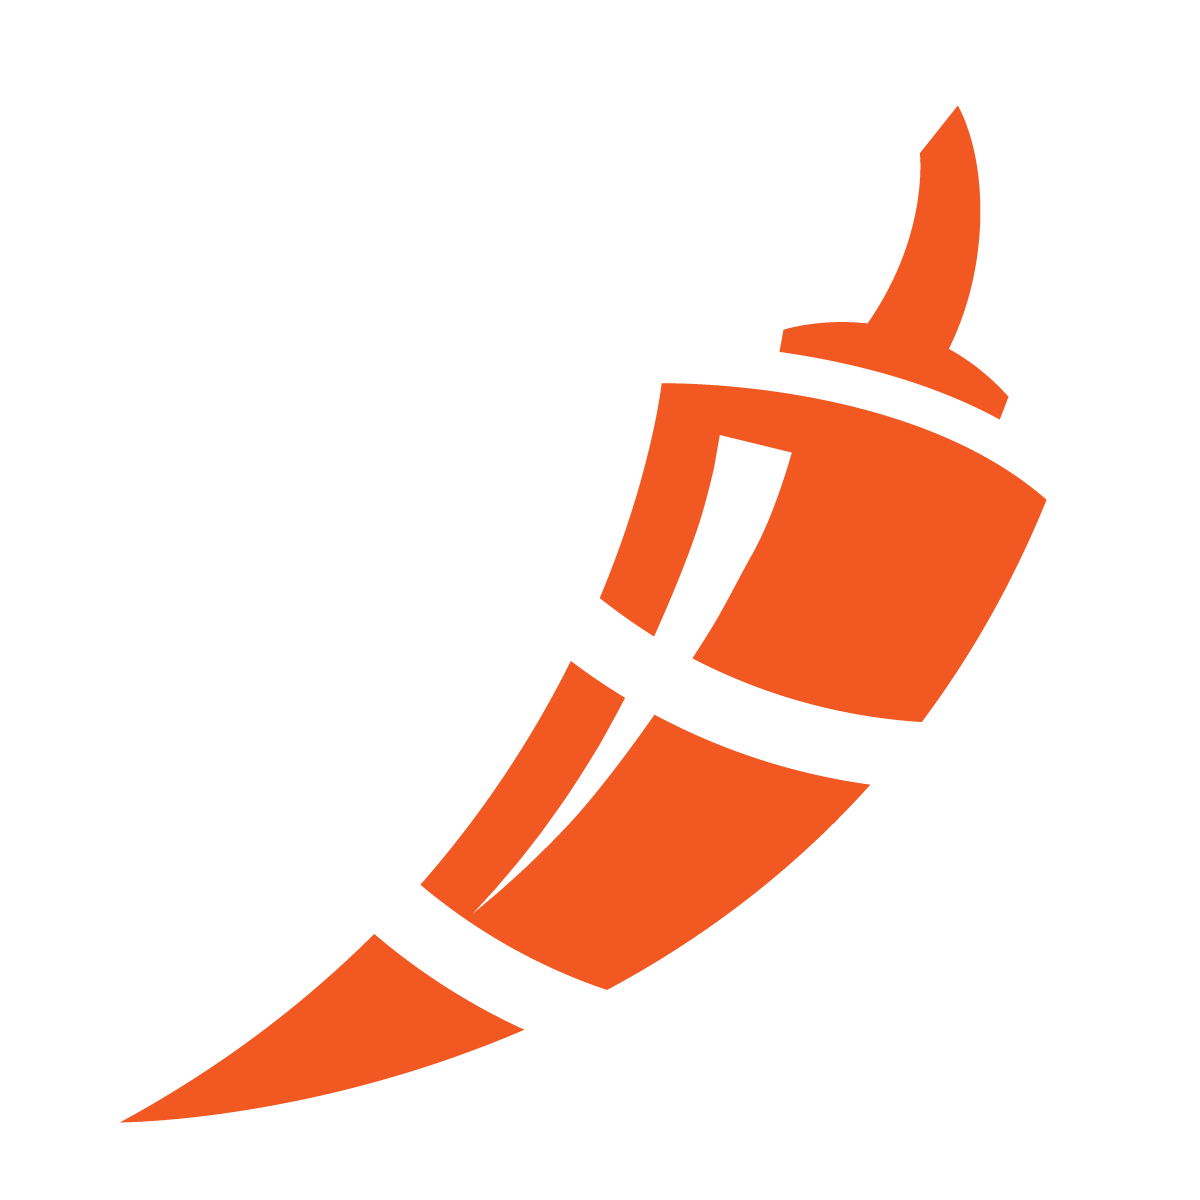 Chili Piper app logo